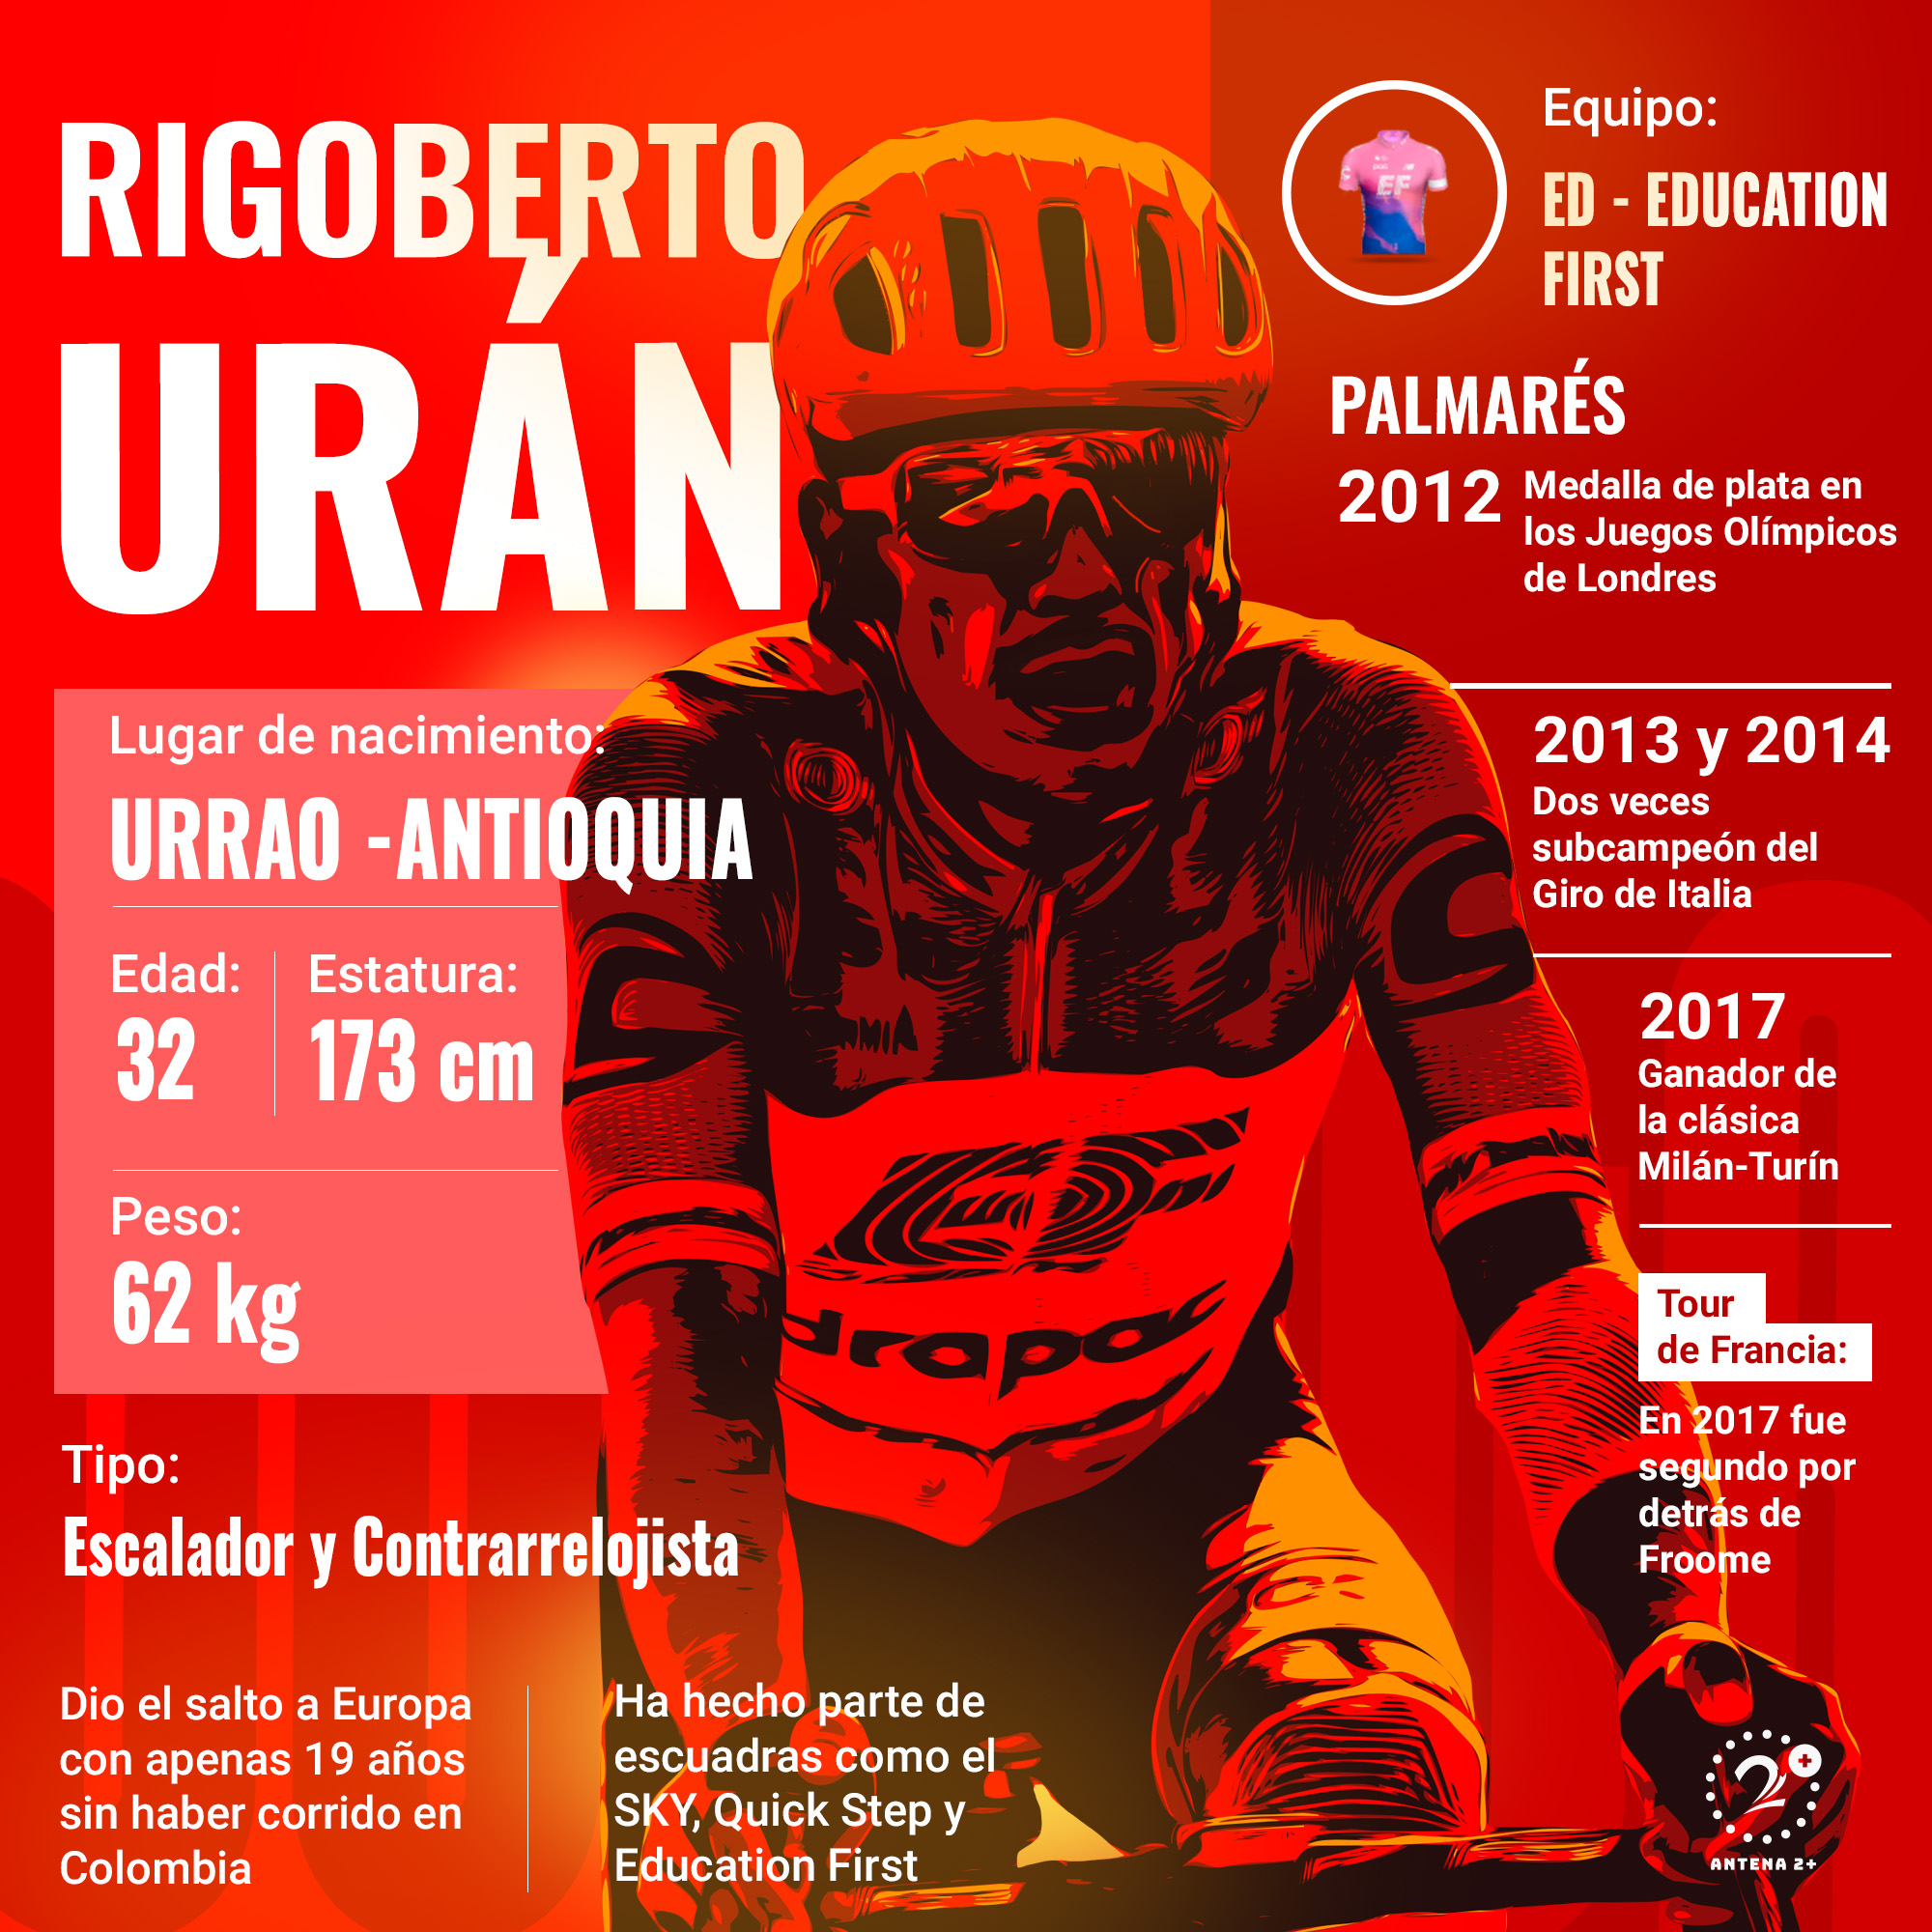 Rigoberto Urán, Vuelta a España 2019